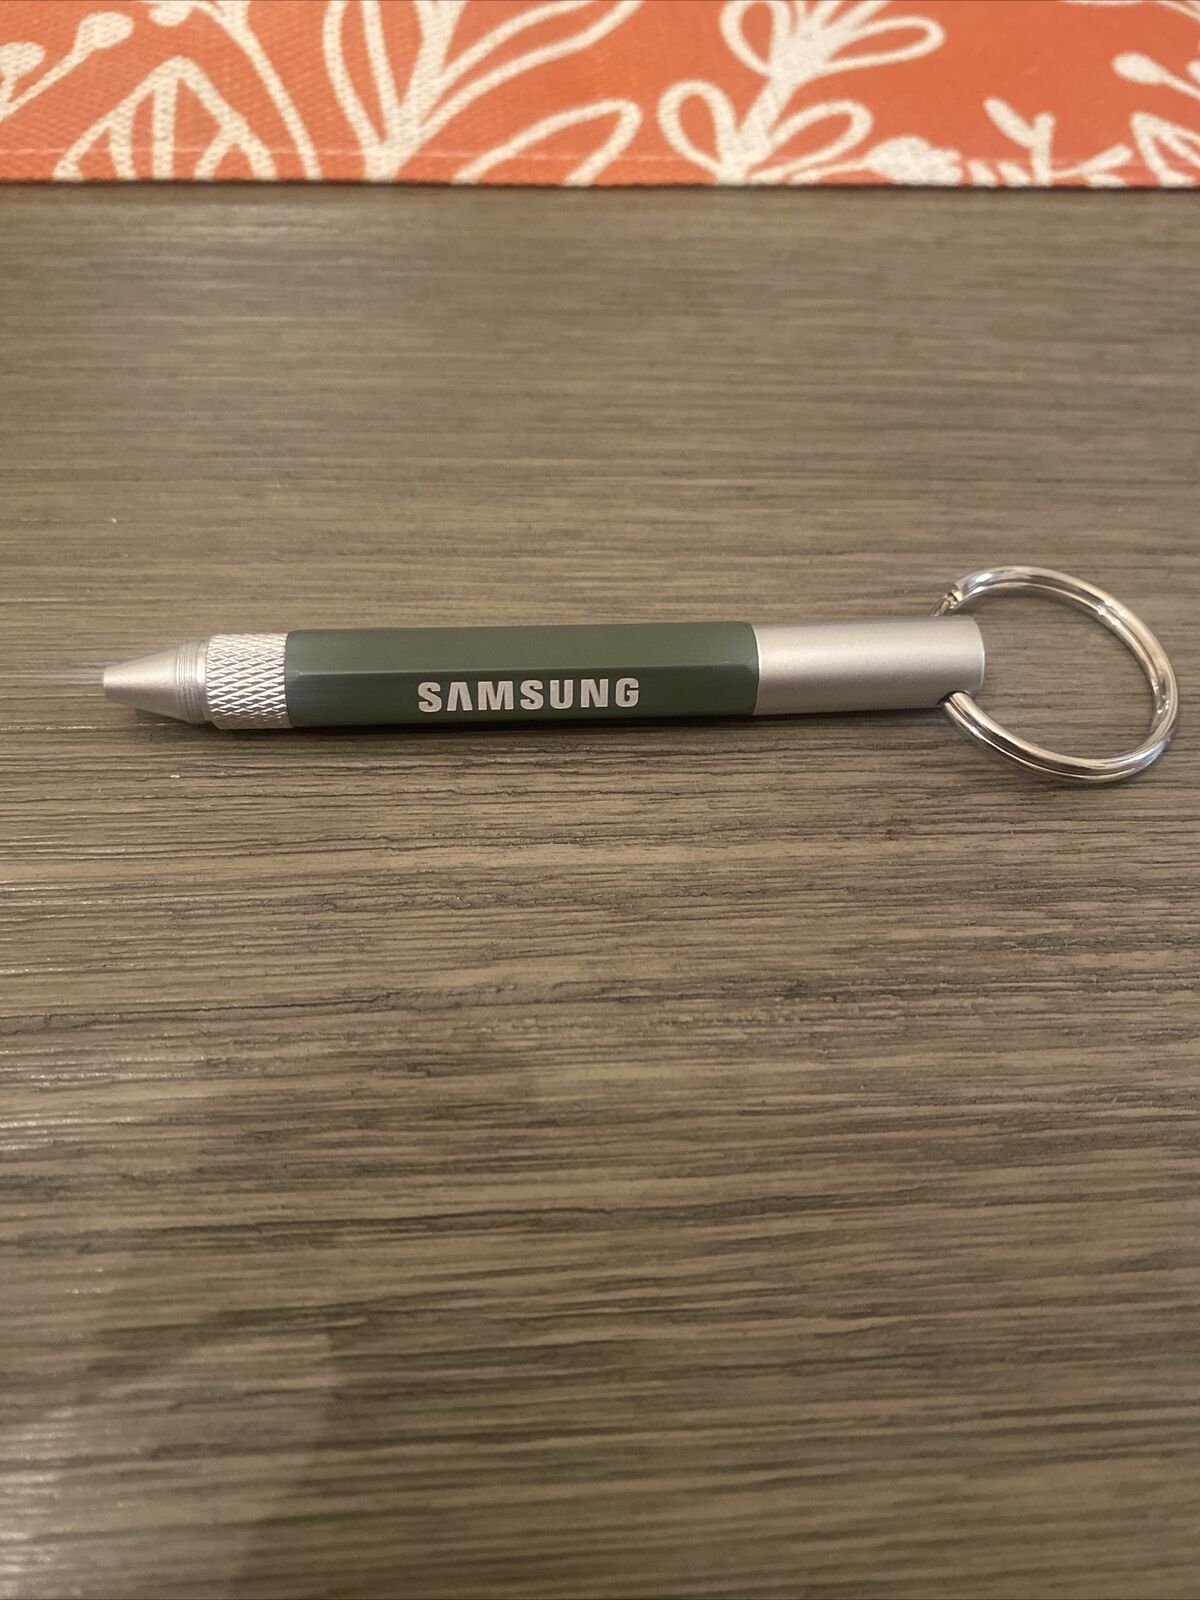 Samsung Pen Keychain (14)